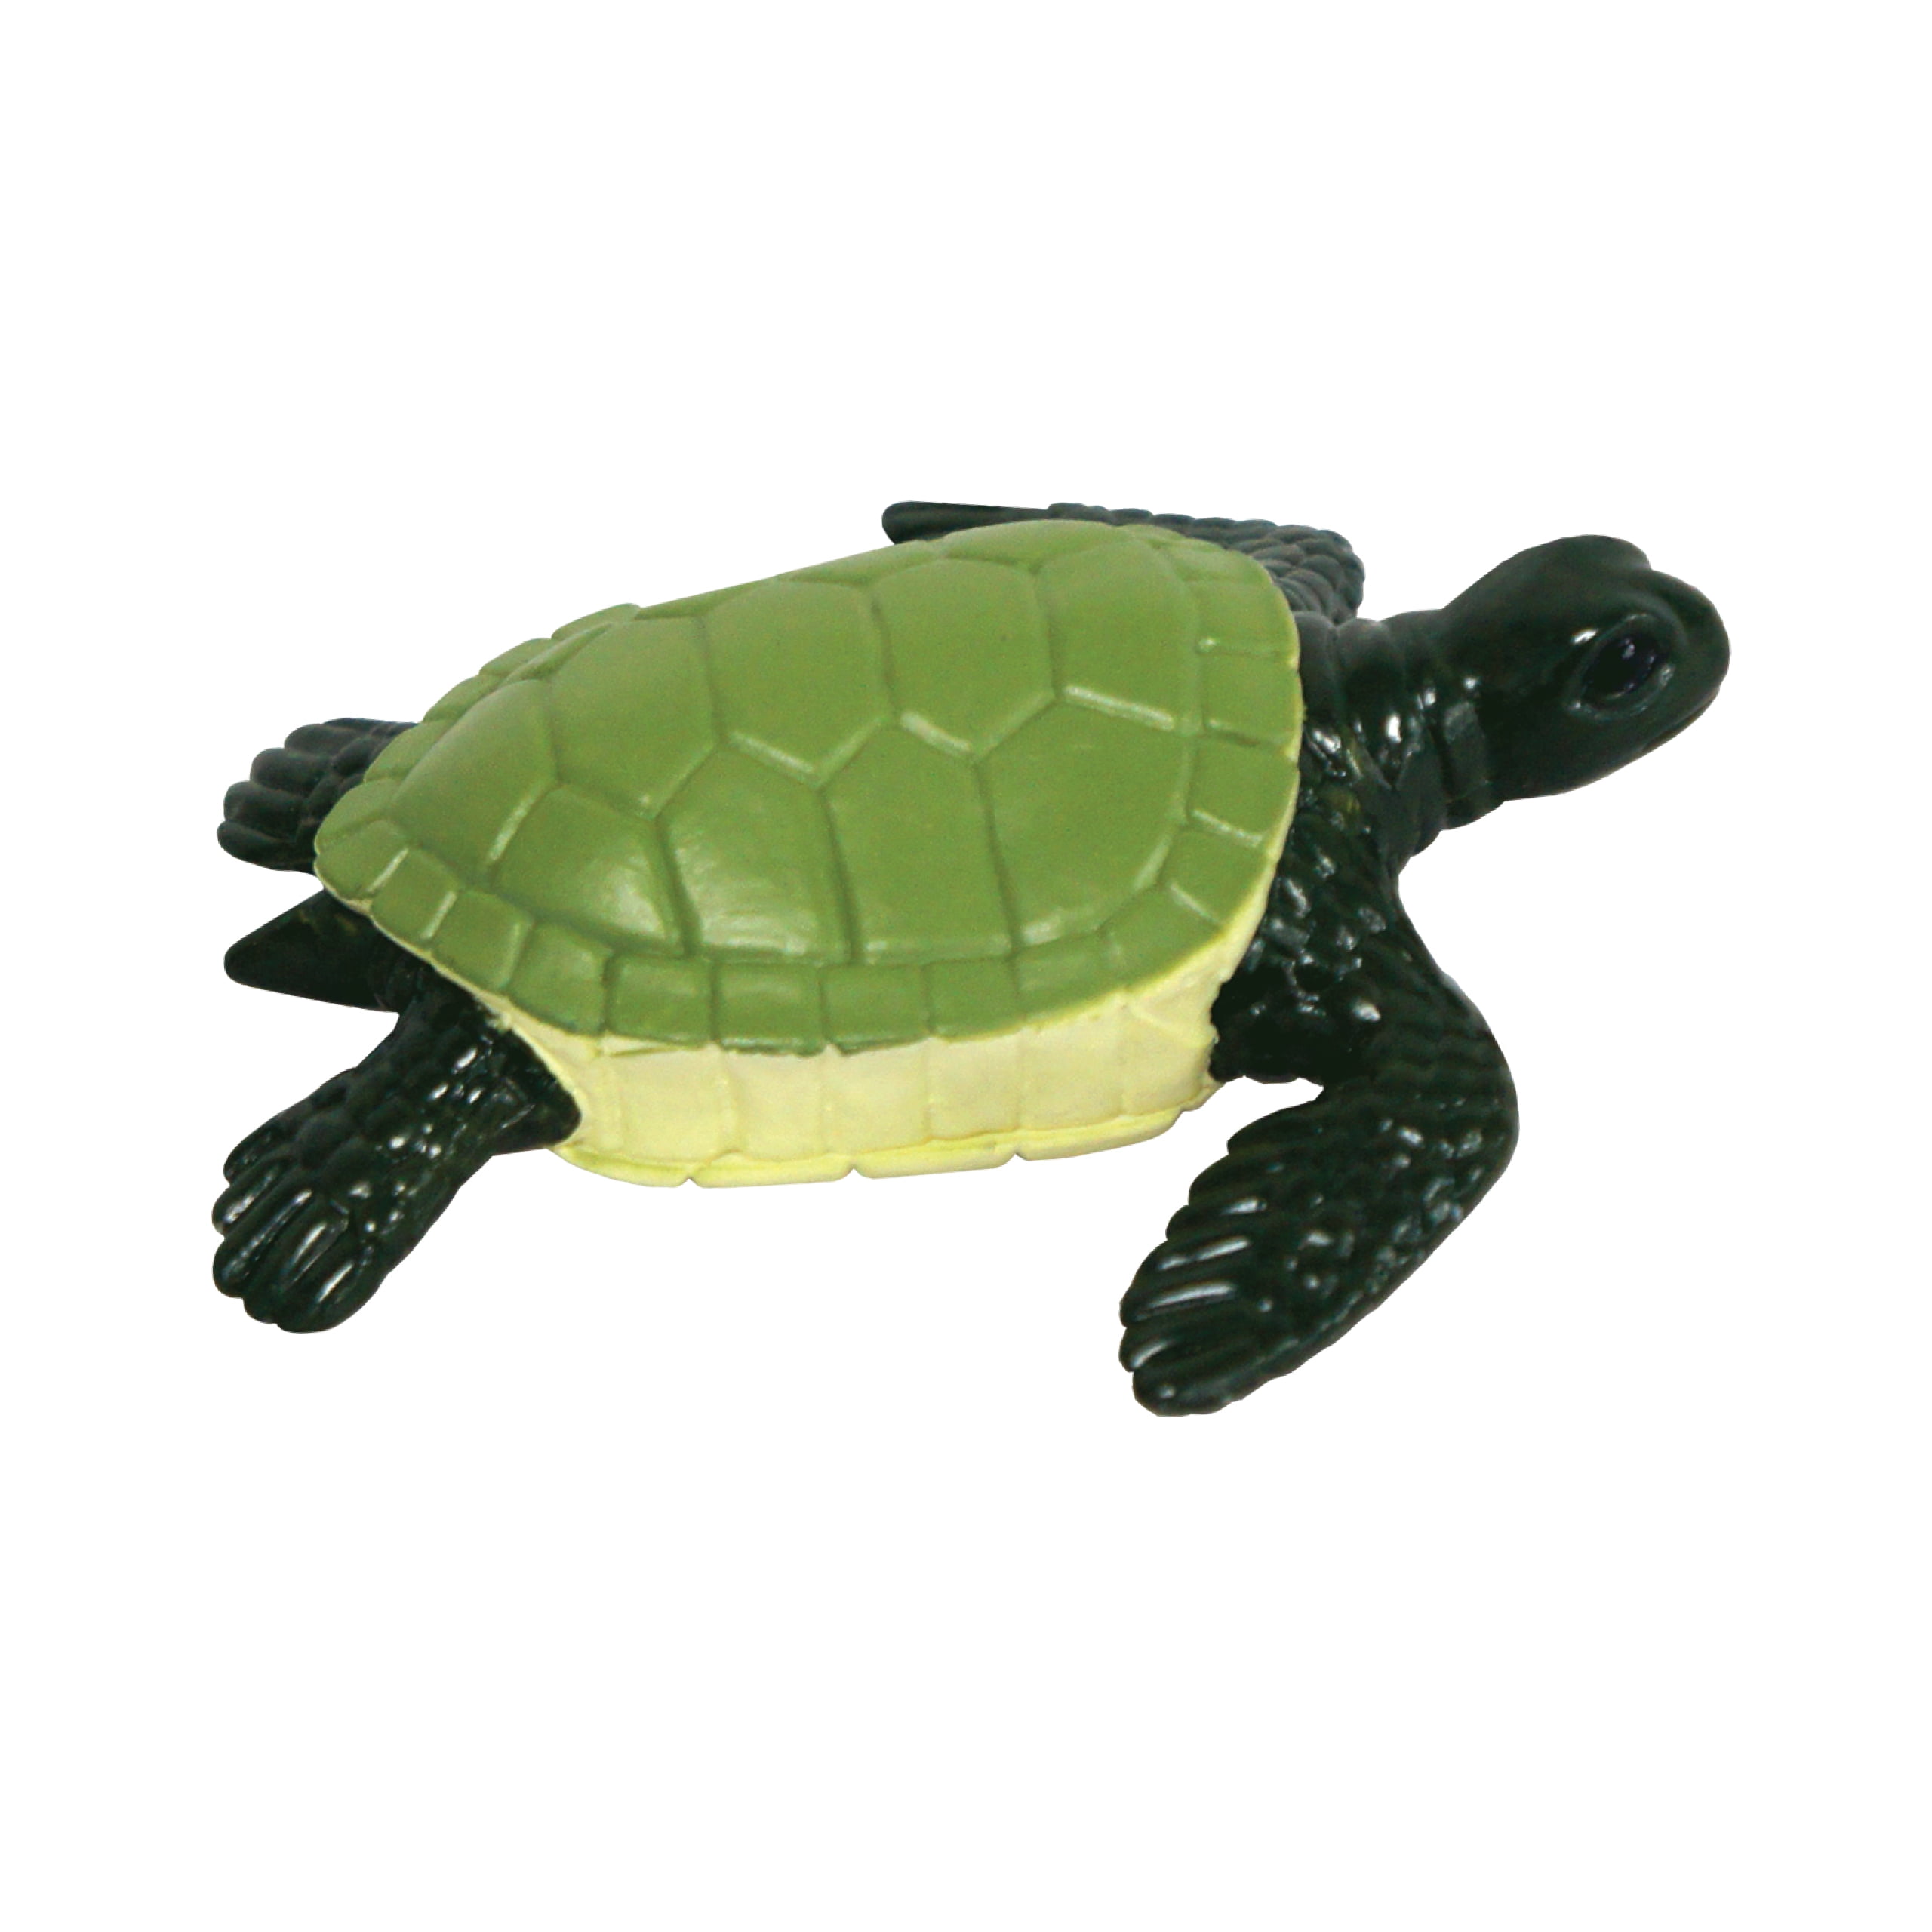 MIni Turtle Realistic Ocean Animal Model Sea Life Figurine Educational Kids Toy 